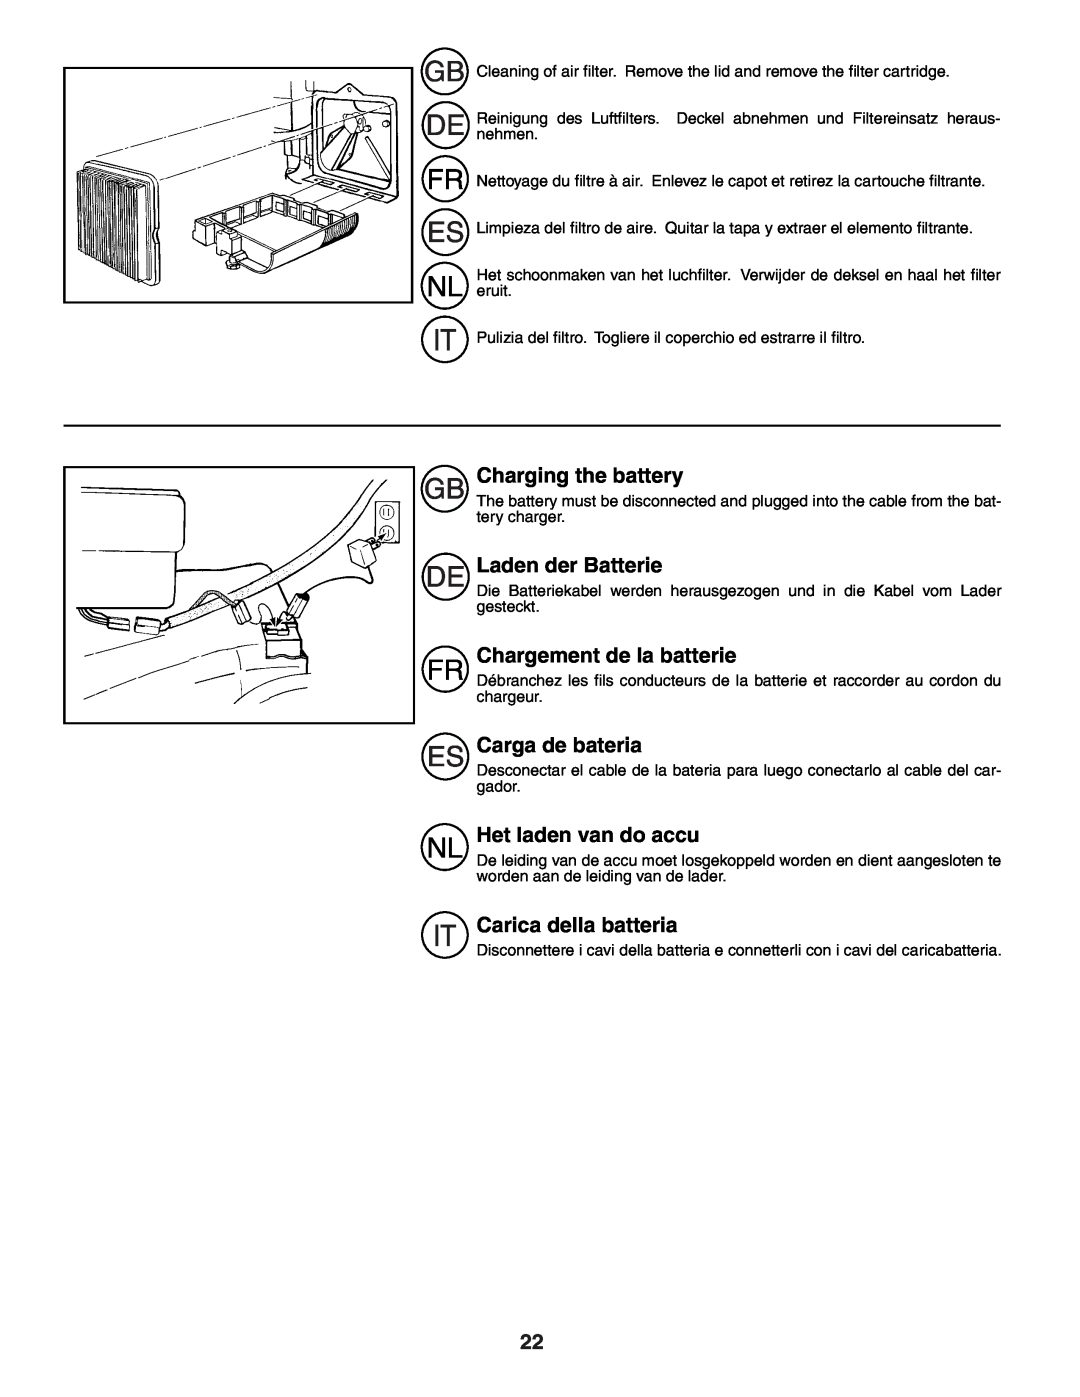 Husqvarna R52SE instruction manual Charging the battery, Laden der Batterie, Chargement de la batterie, Carga de bateria 